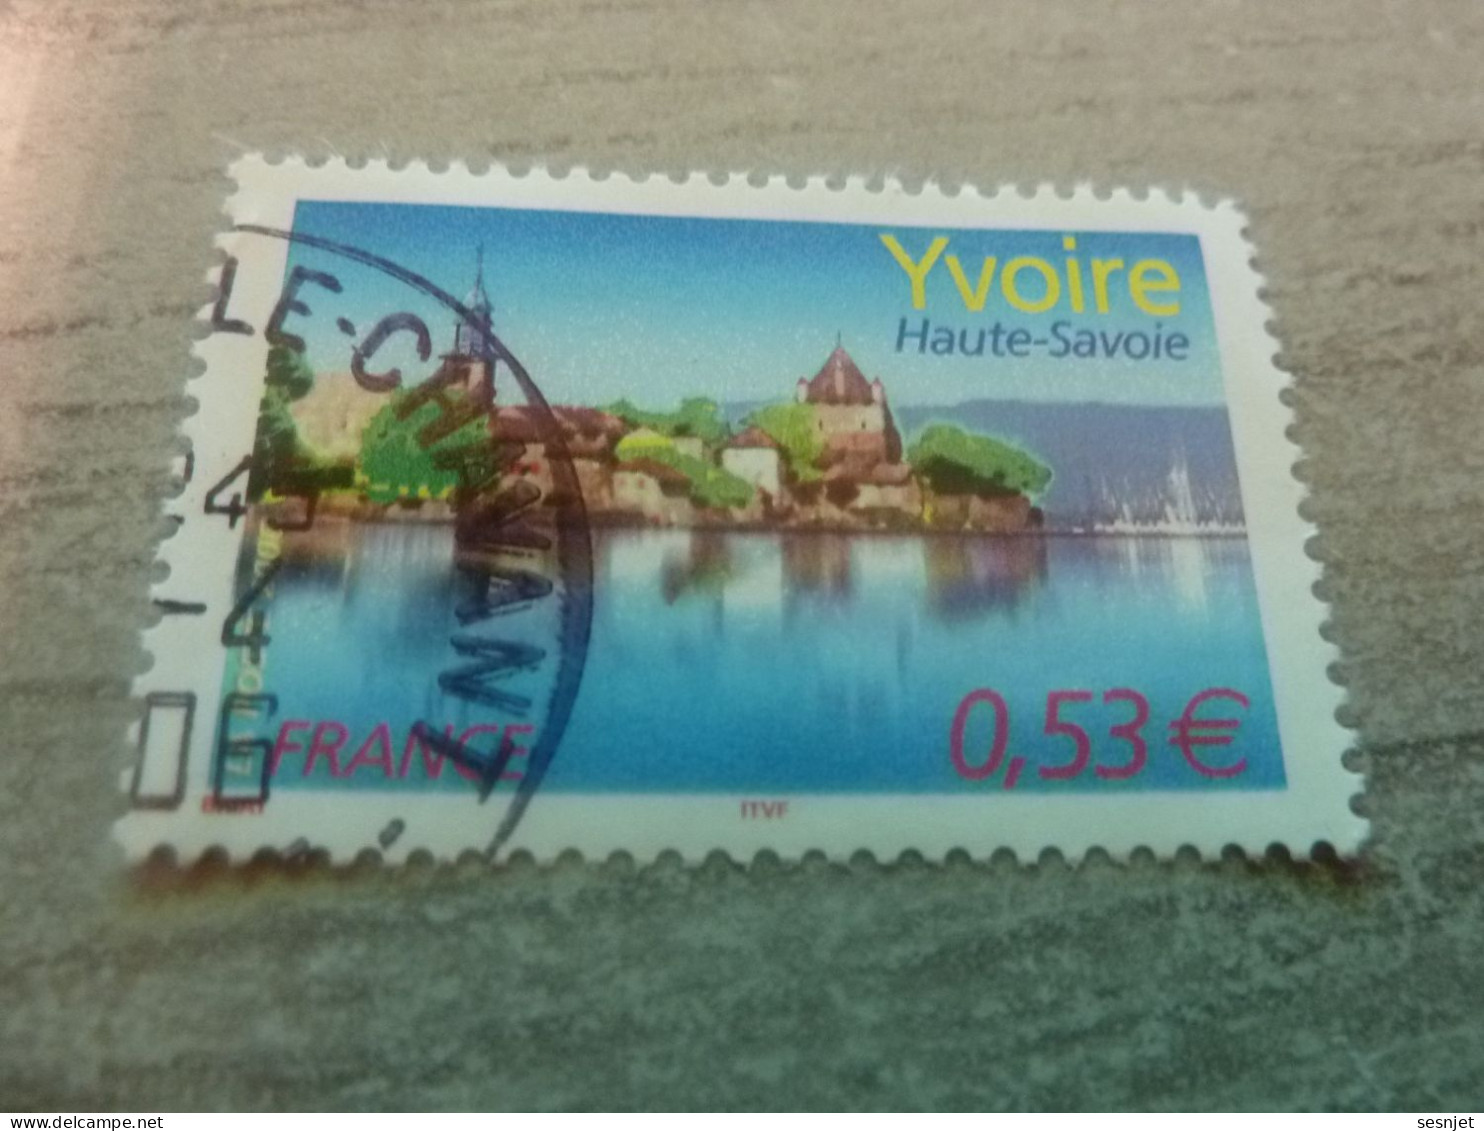 Yvoire - Lac Léman (Haute-Savoie) - 0.53€ - Yt 3892 - Multicolore - Oblitéré - Année 2006 - - Used Stamps